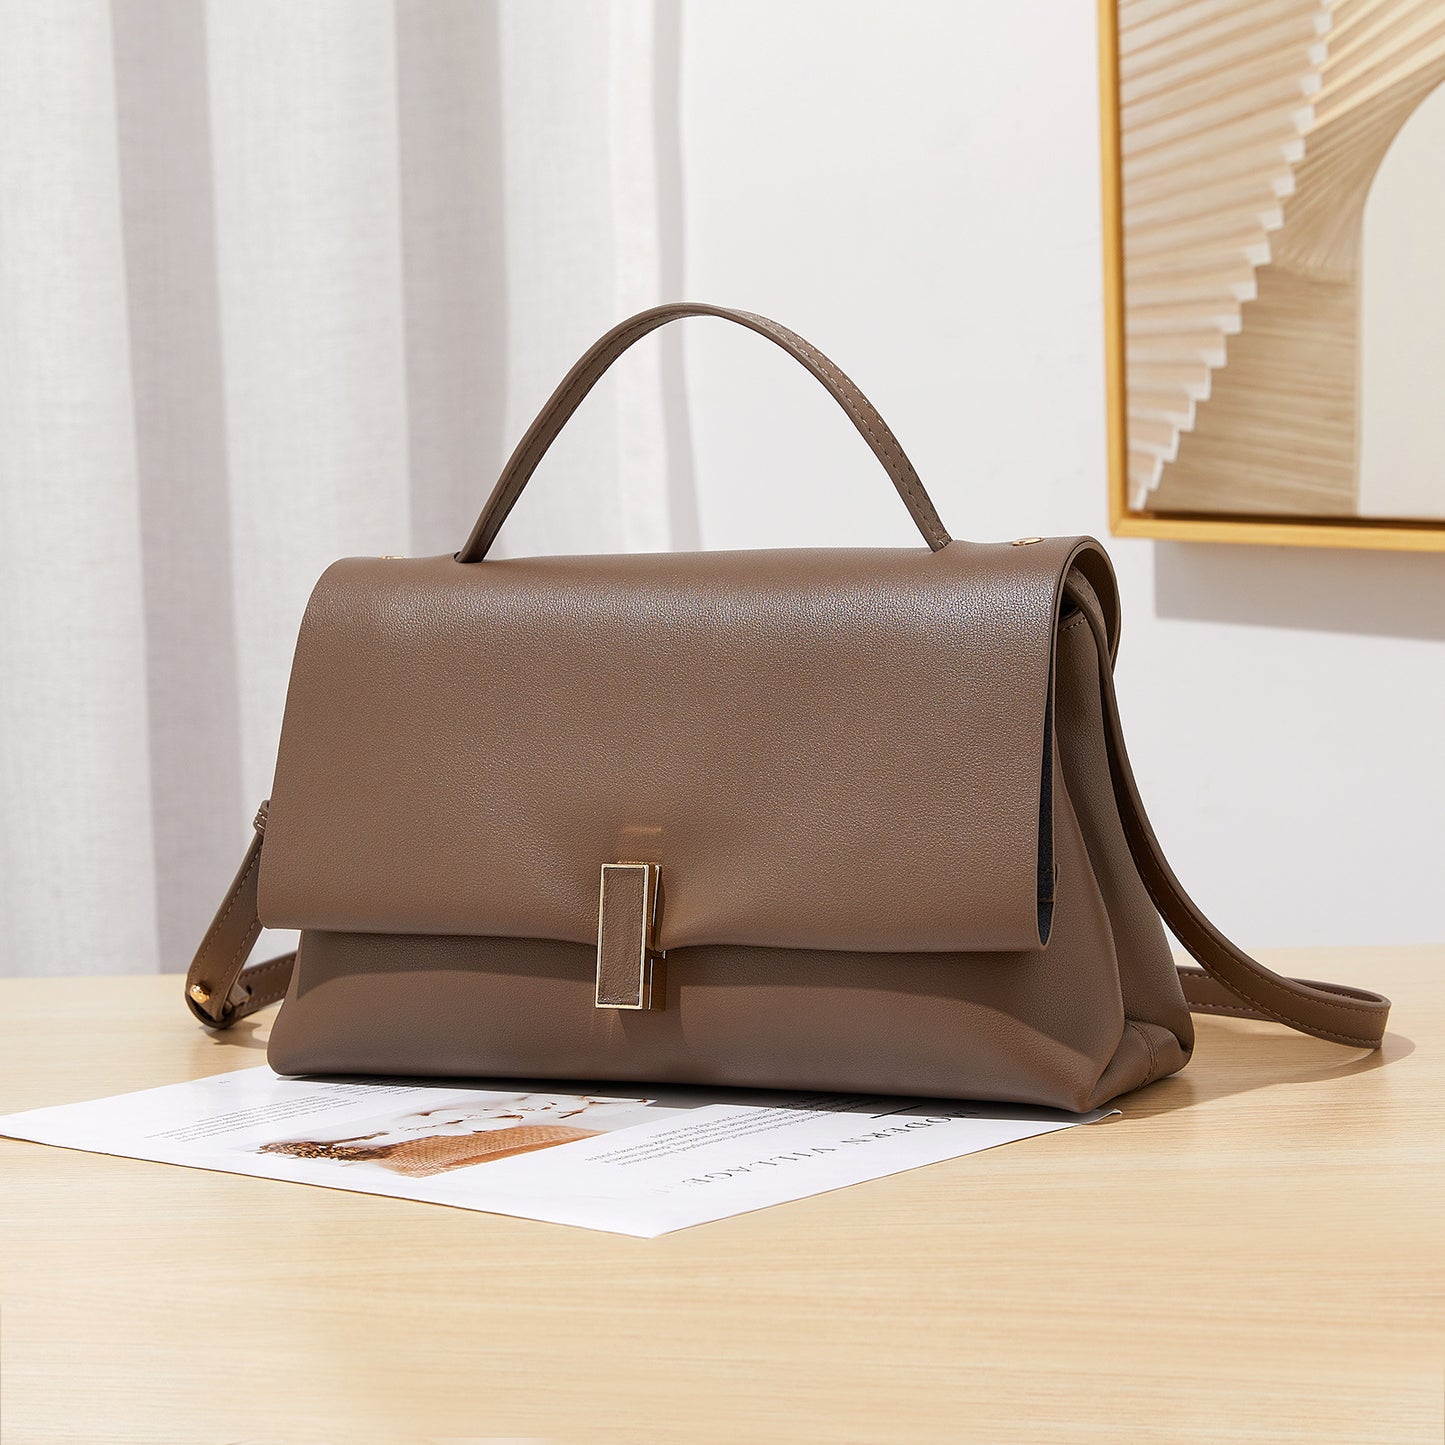 Retro New Trendy Authentic Leather Tactile Feel Handbag